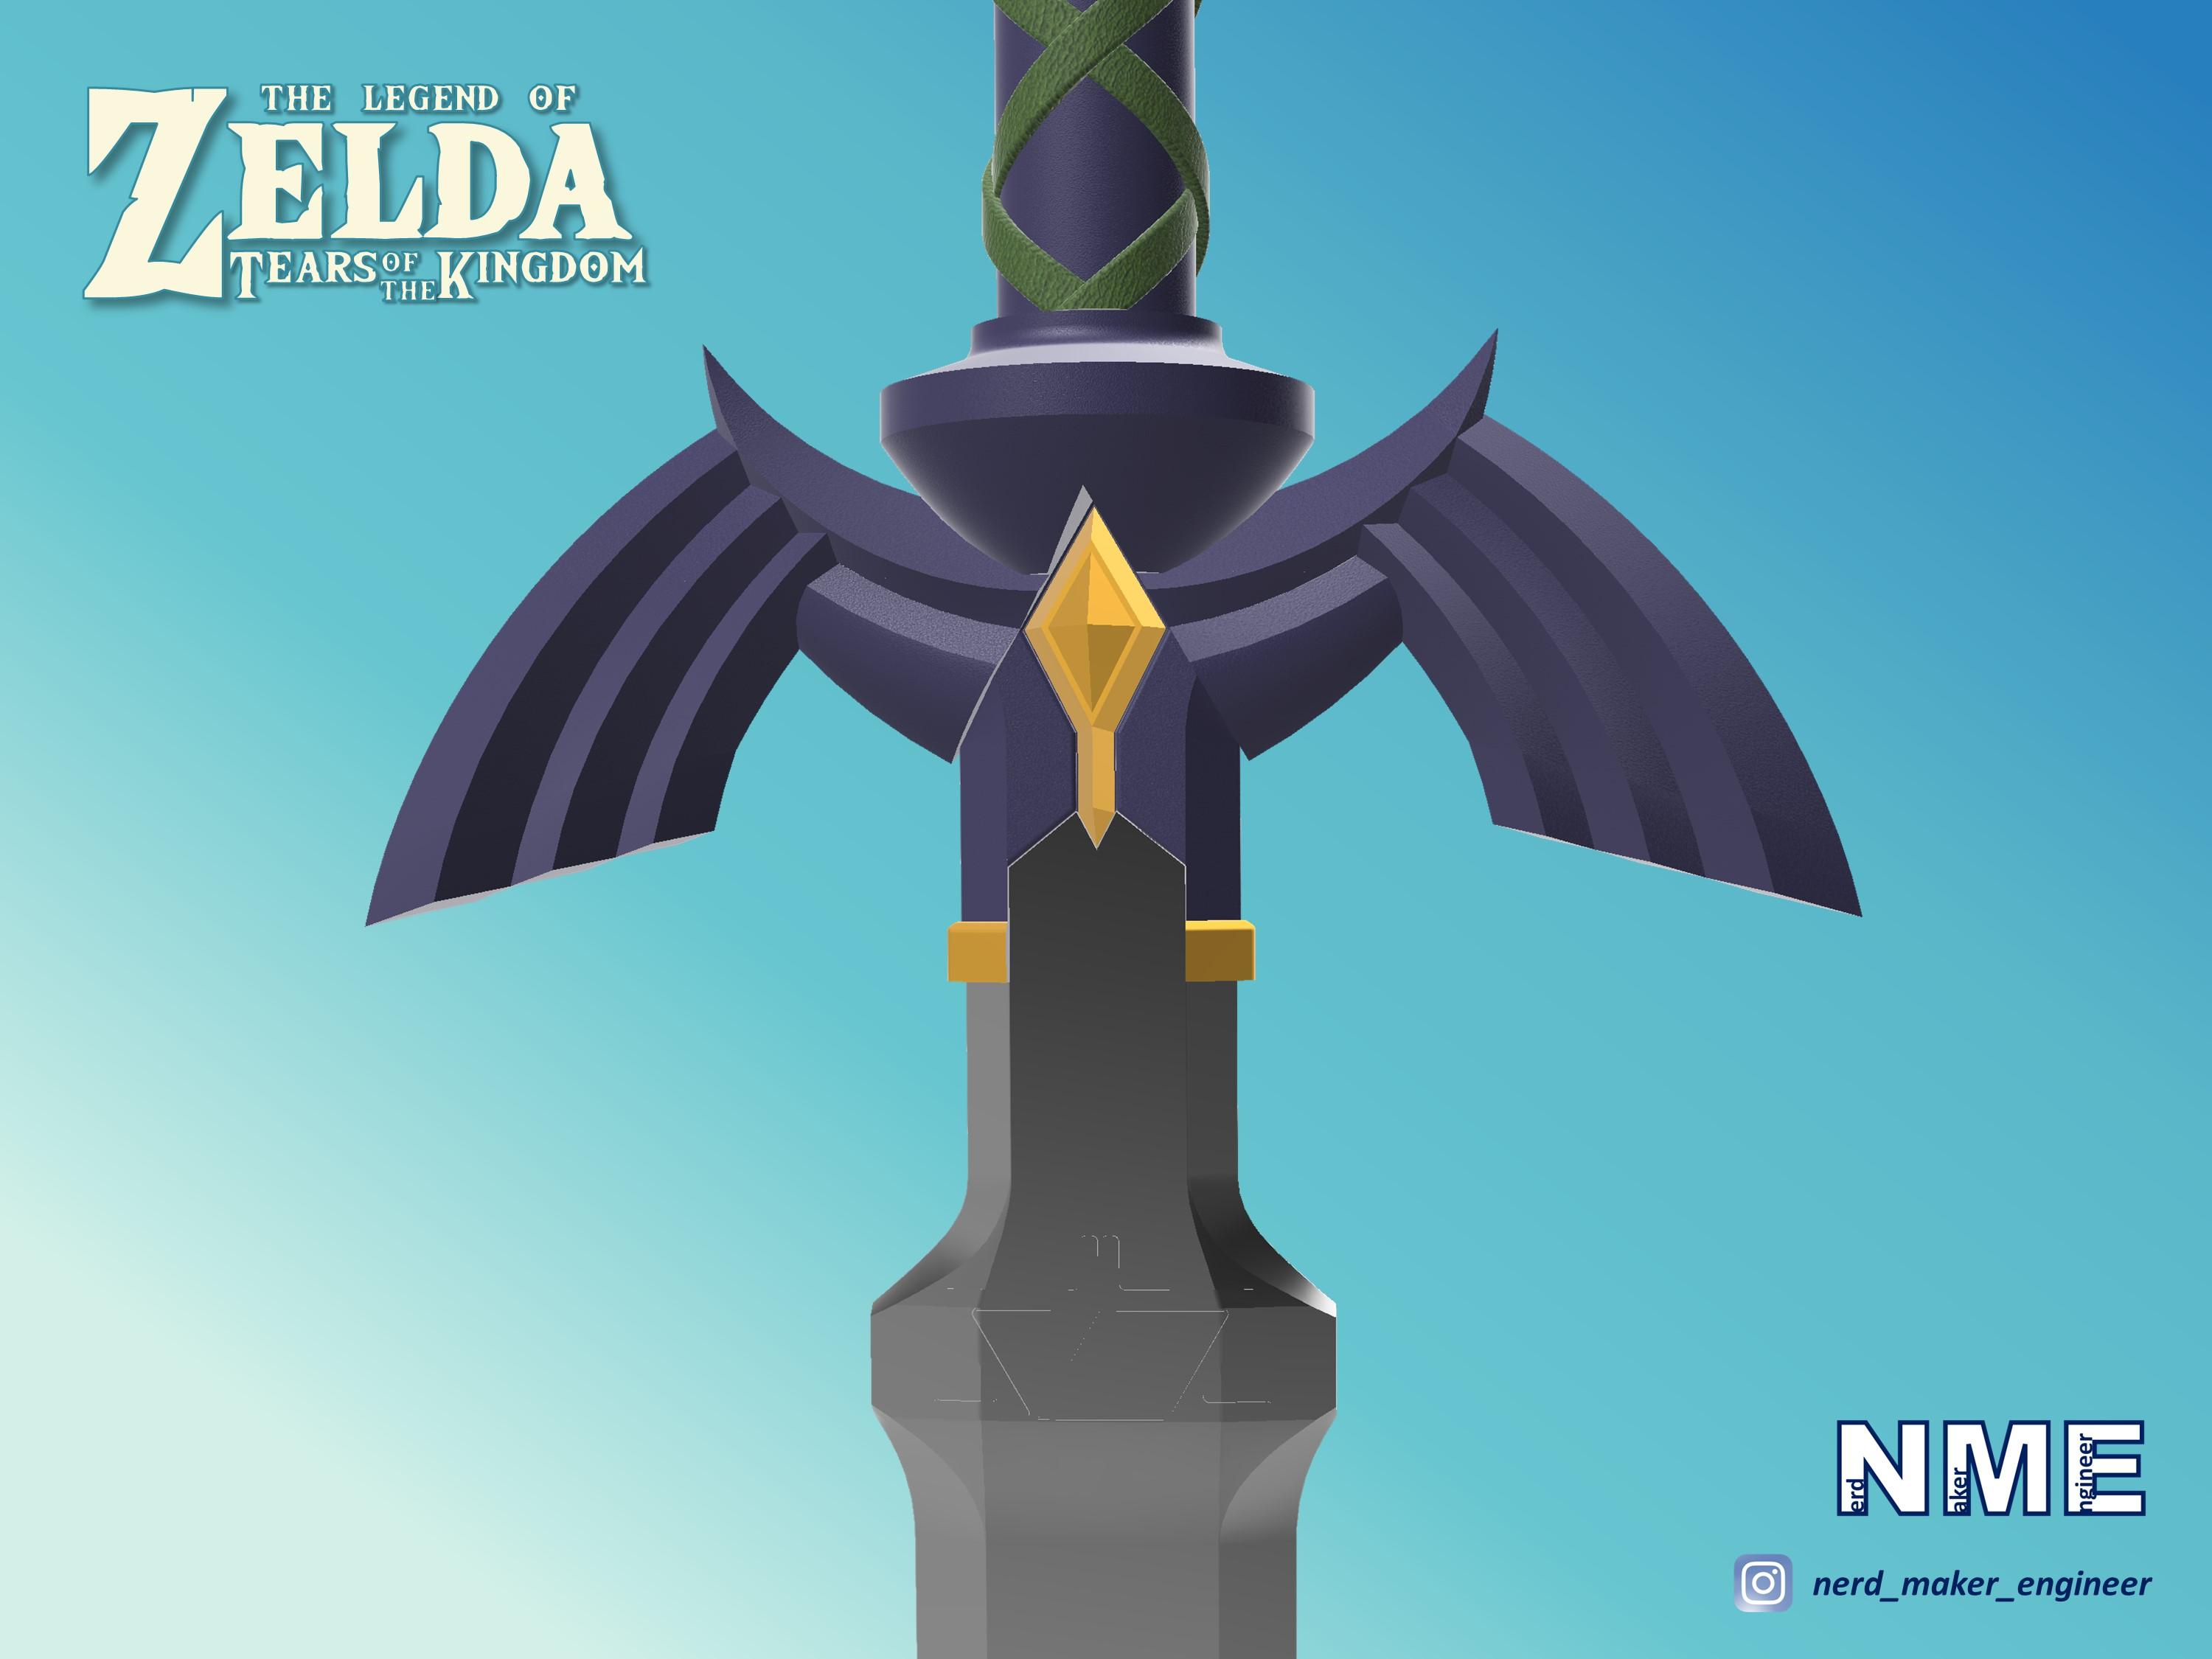 Master Sword - Zelda Tears of the Kingdom - Complete Set - Life Size 3d model